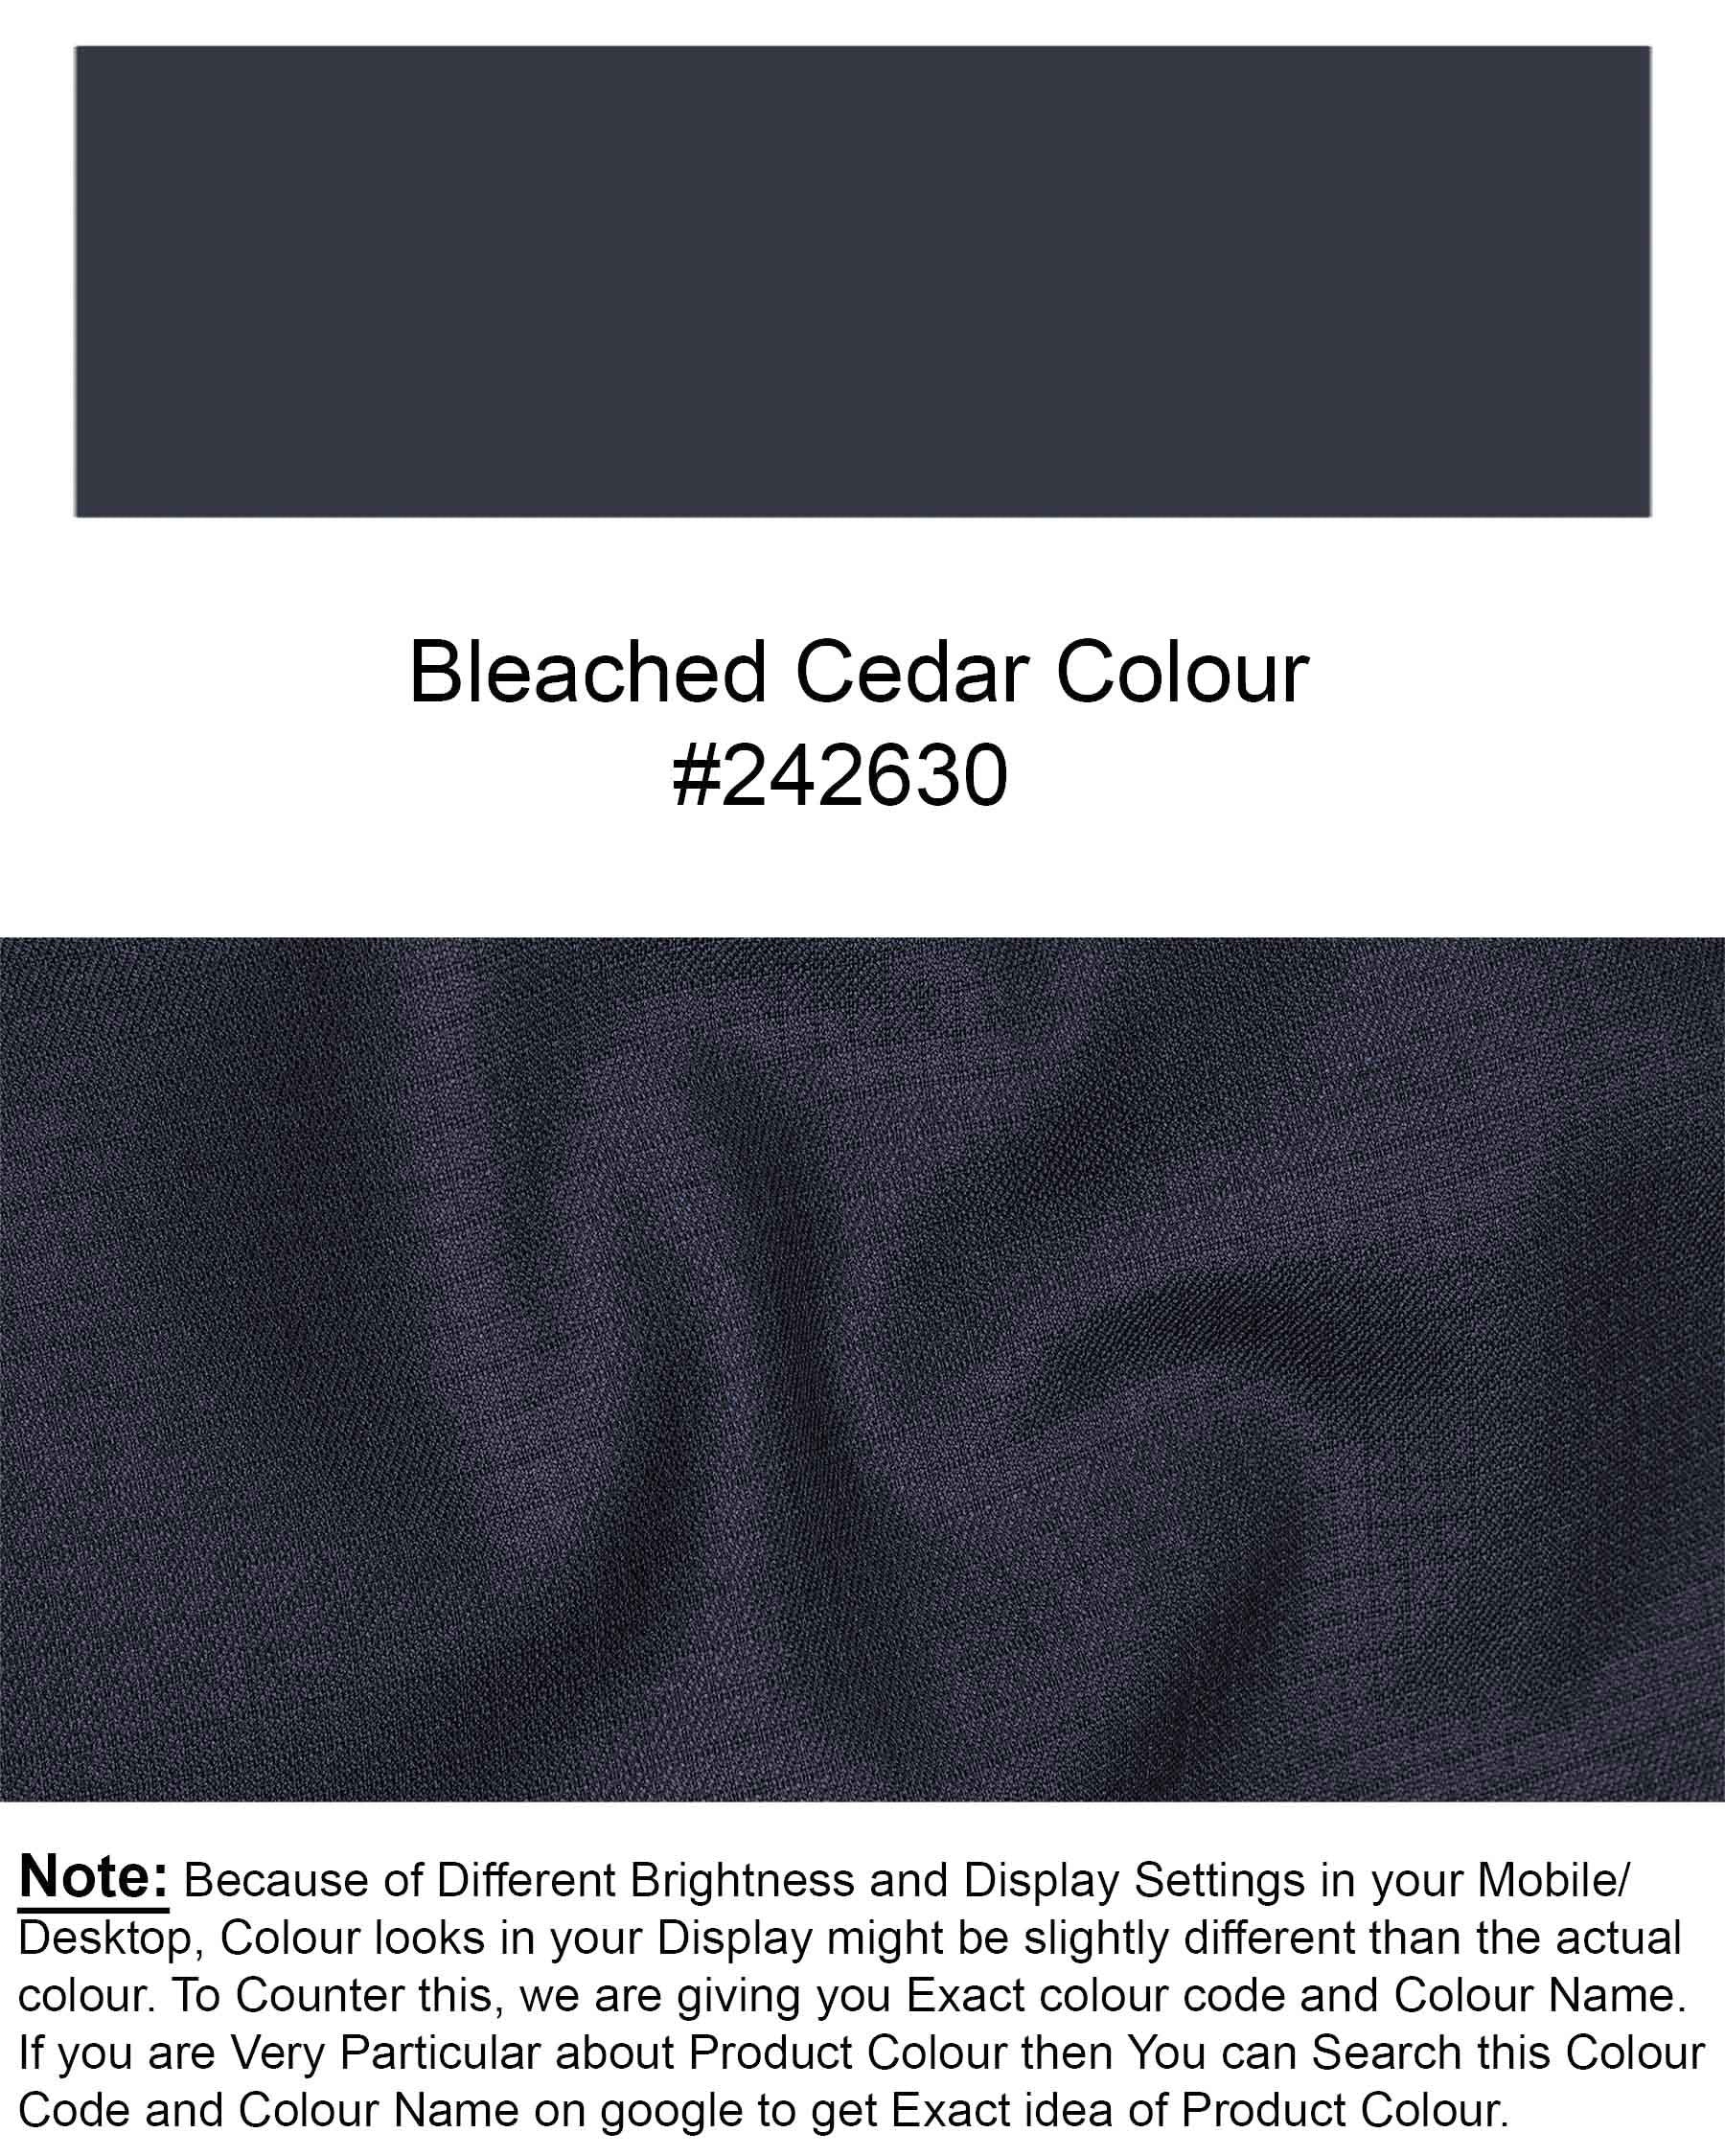 Bleached Cedar Blue Textured Waistcoat V1923-36, V1923-38, V1923-40, V1923-42, V1923-44, V1923-46, V1923-48, V1923-50, V1923-52, V1923-54, V1923-56, V1923-58, V1923-60